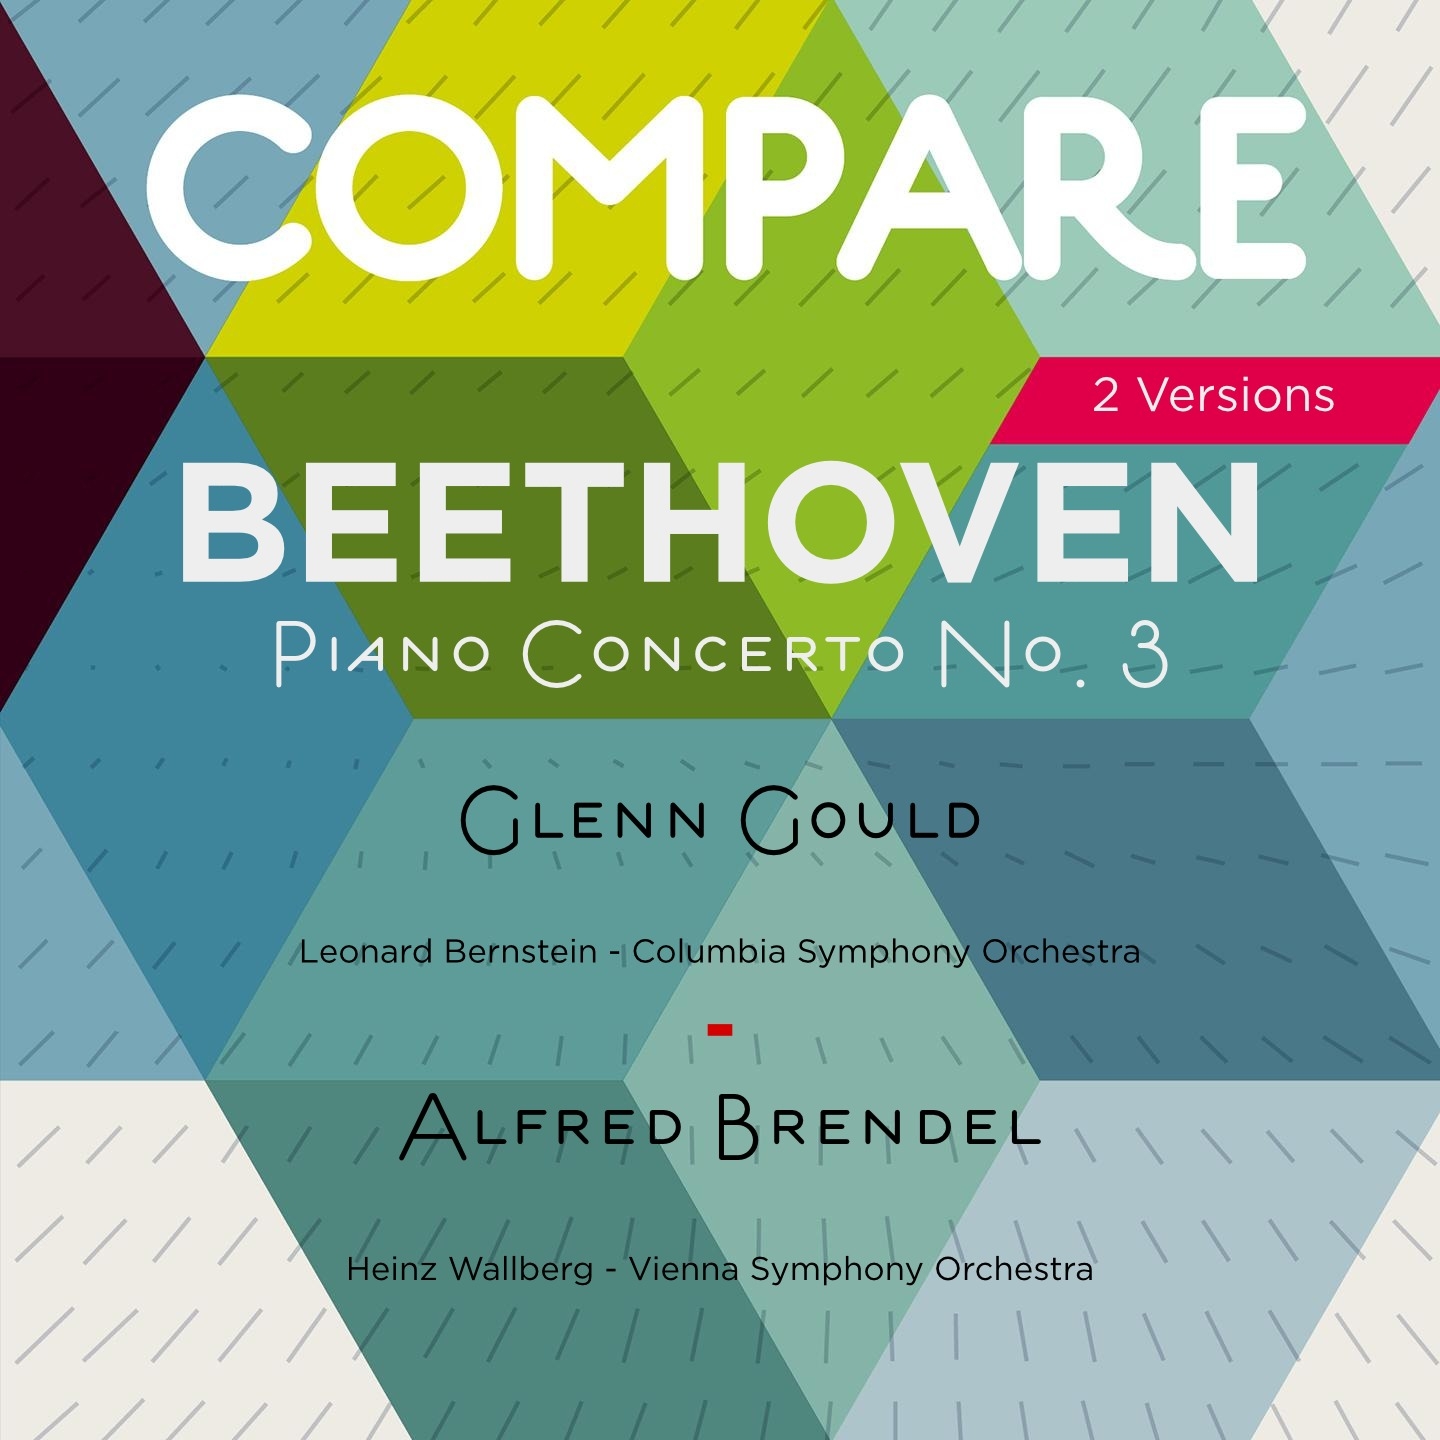 Beethoven: Piano Concerto No. 3, Glenn Gould vs. Alfred Brendel